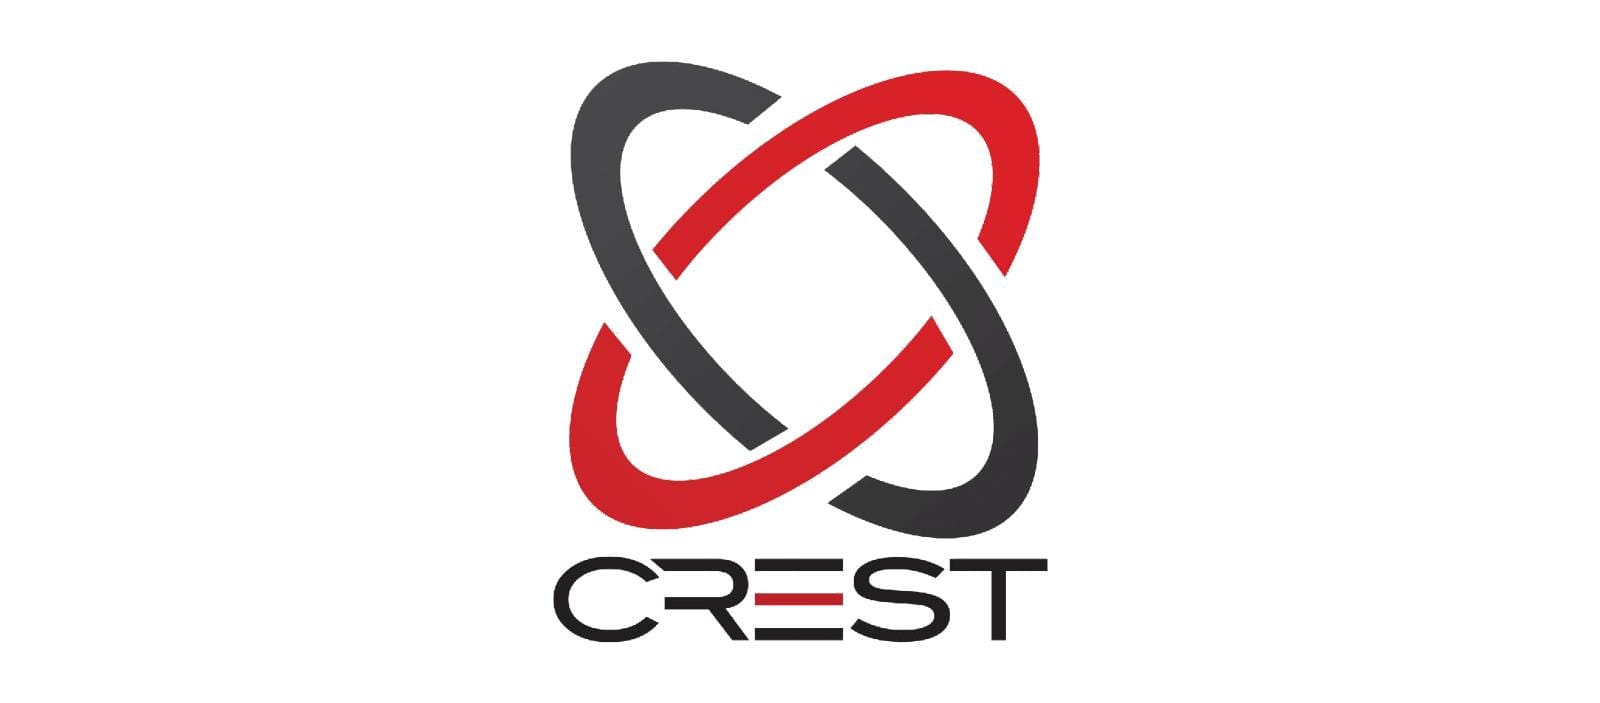 CREST registered